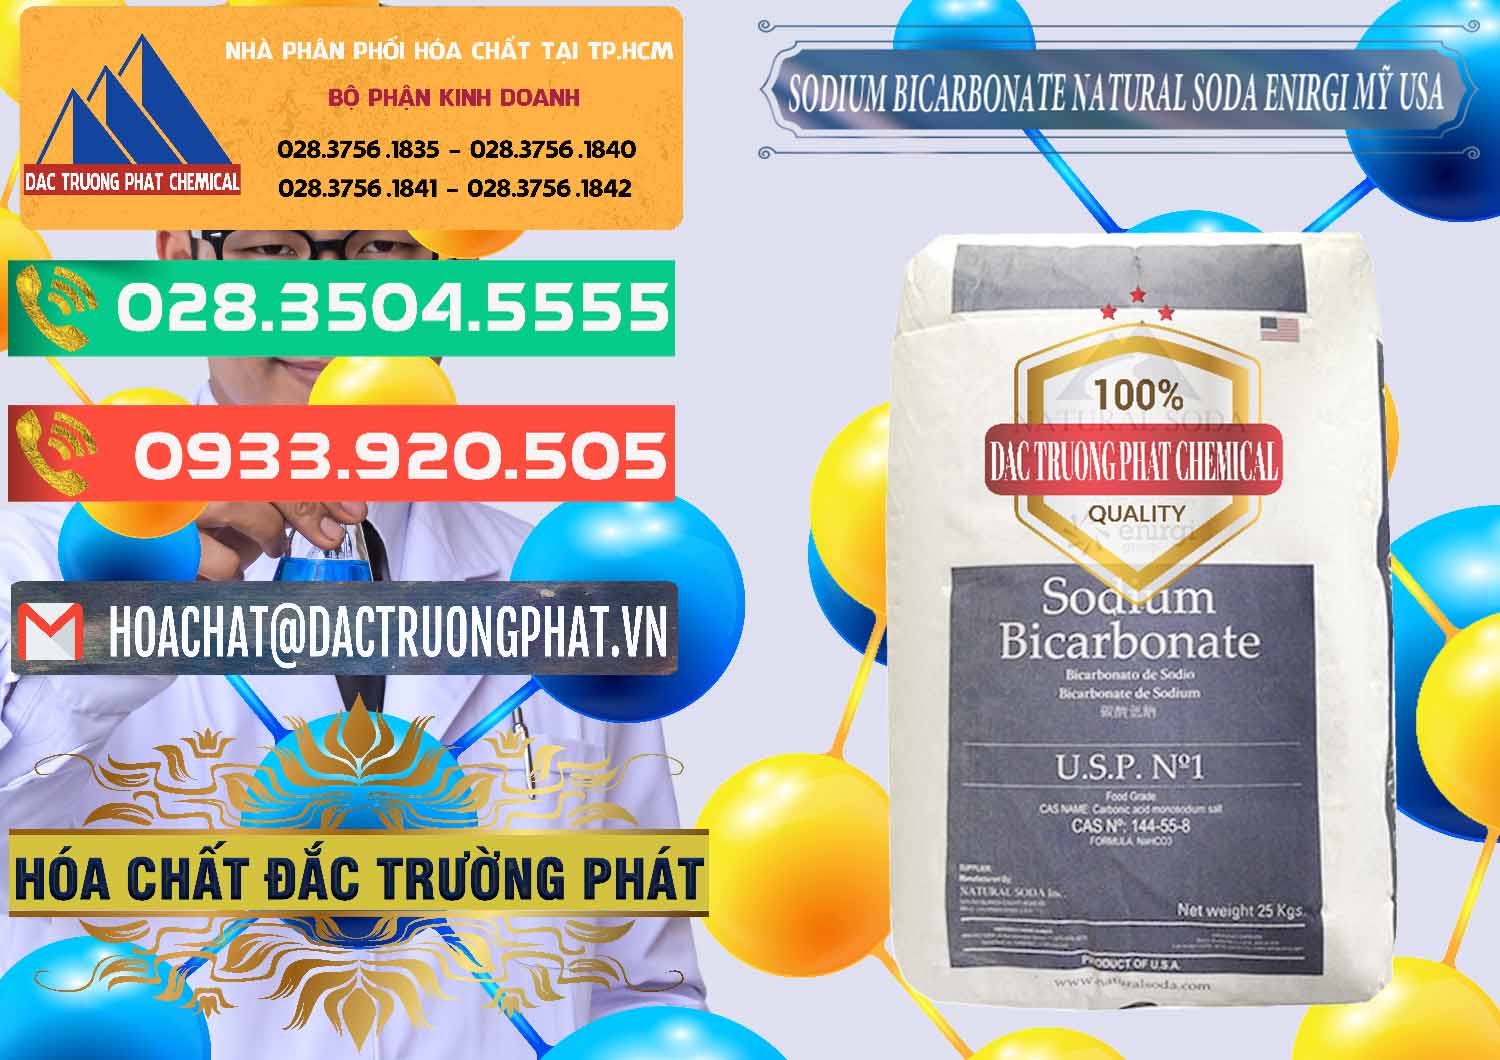 Công ty chuyên bán và cung ứng Sodium Bicarbonate – Bicar NaHCO3 Food Grade Natural Soda Enirgi Mỹ USA - 0257 - Cty chuyên nhập khẩu ( cung cấp ) hóa chất tại TP.HCM - congtyhoachat.com.vn